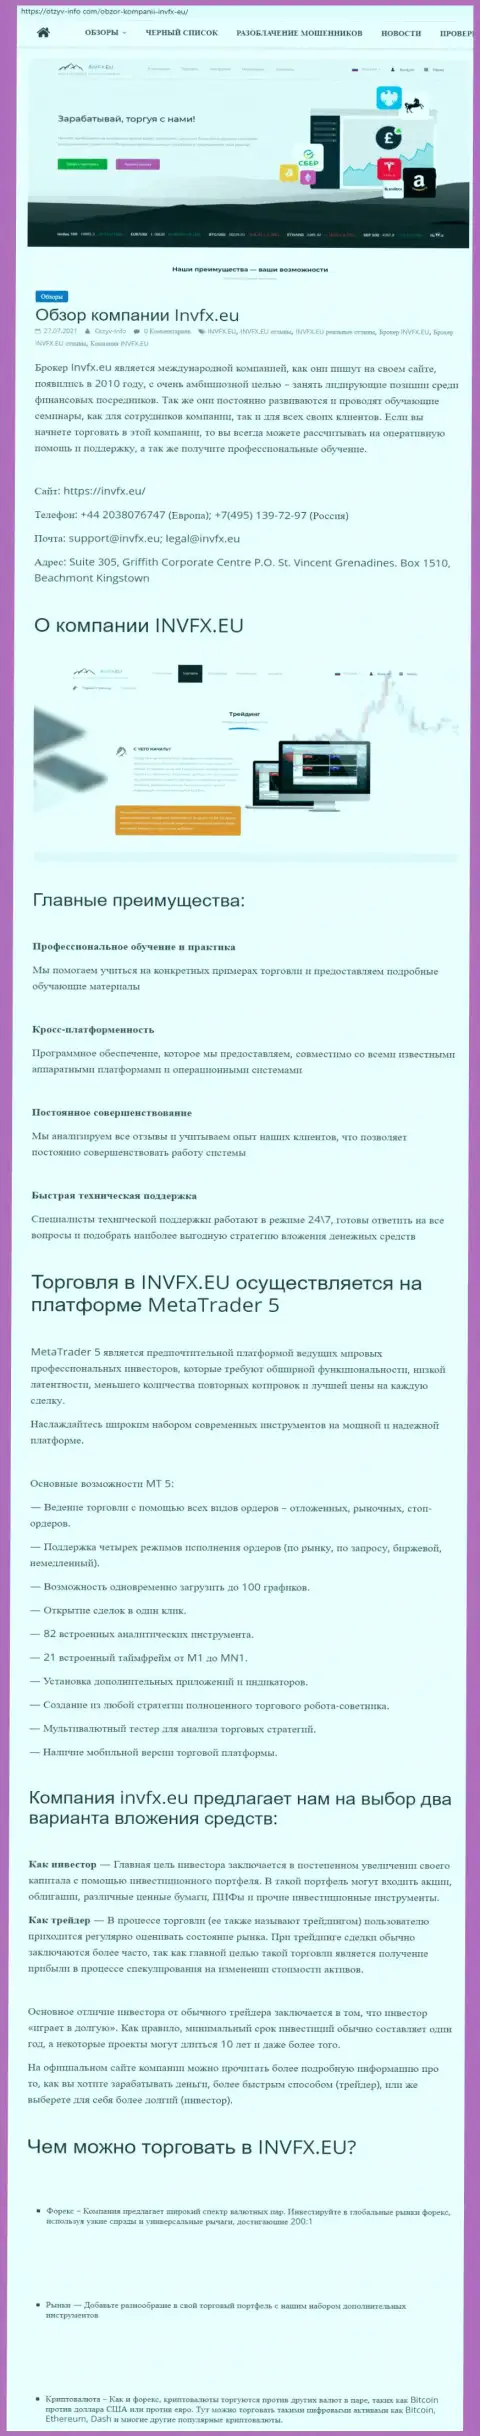 Сервис Otzyv Info Com опубликовал статью о ФОРЕКС-организации INVFX